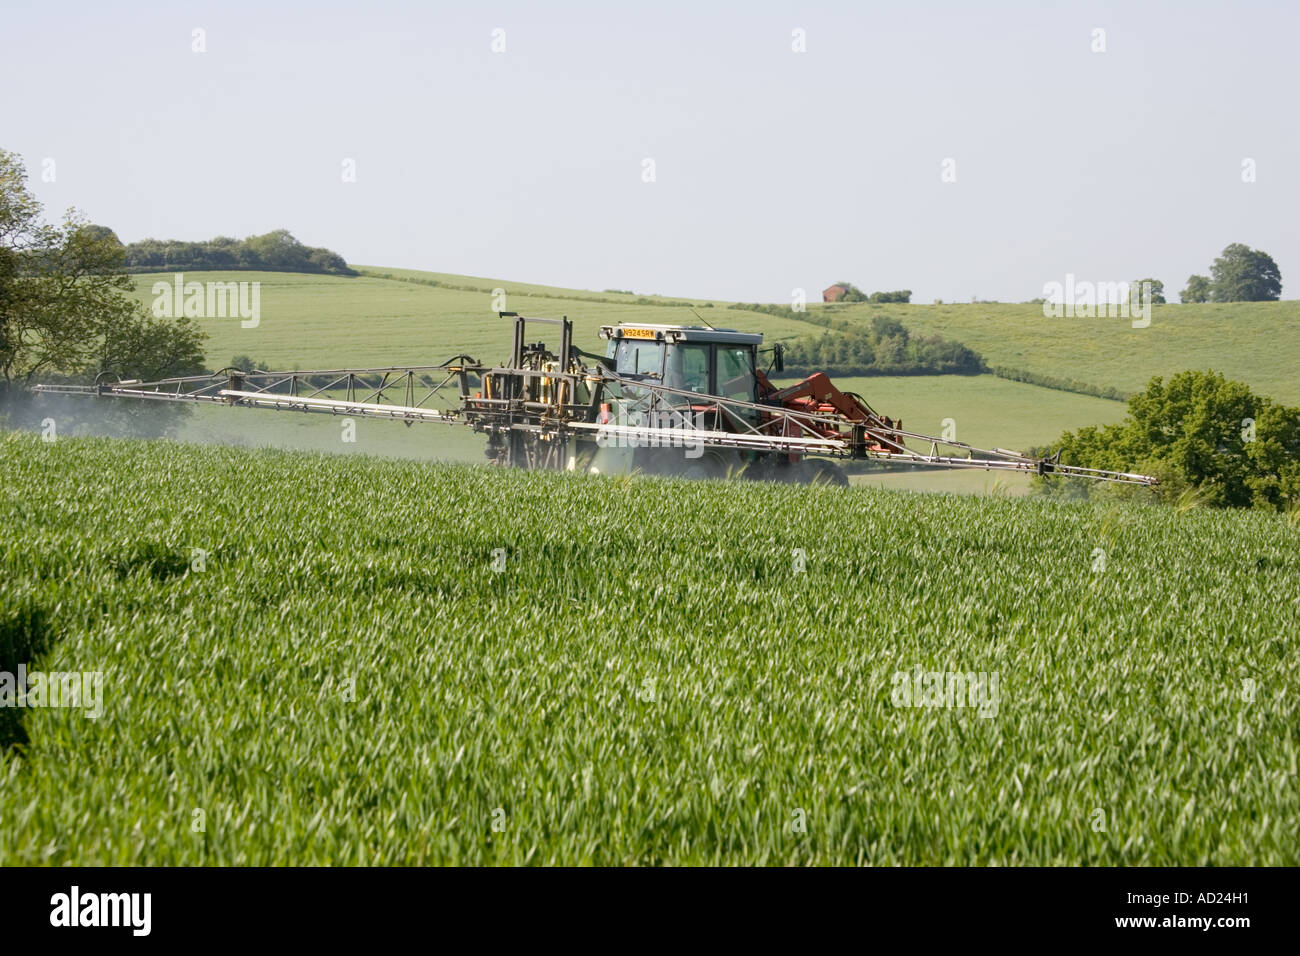 Bauer auf roten Traktor sprühen Getreideart in Cotswolds Mickleton UK Stockfoto